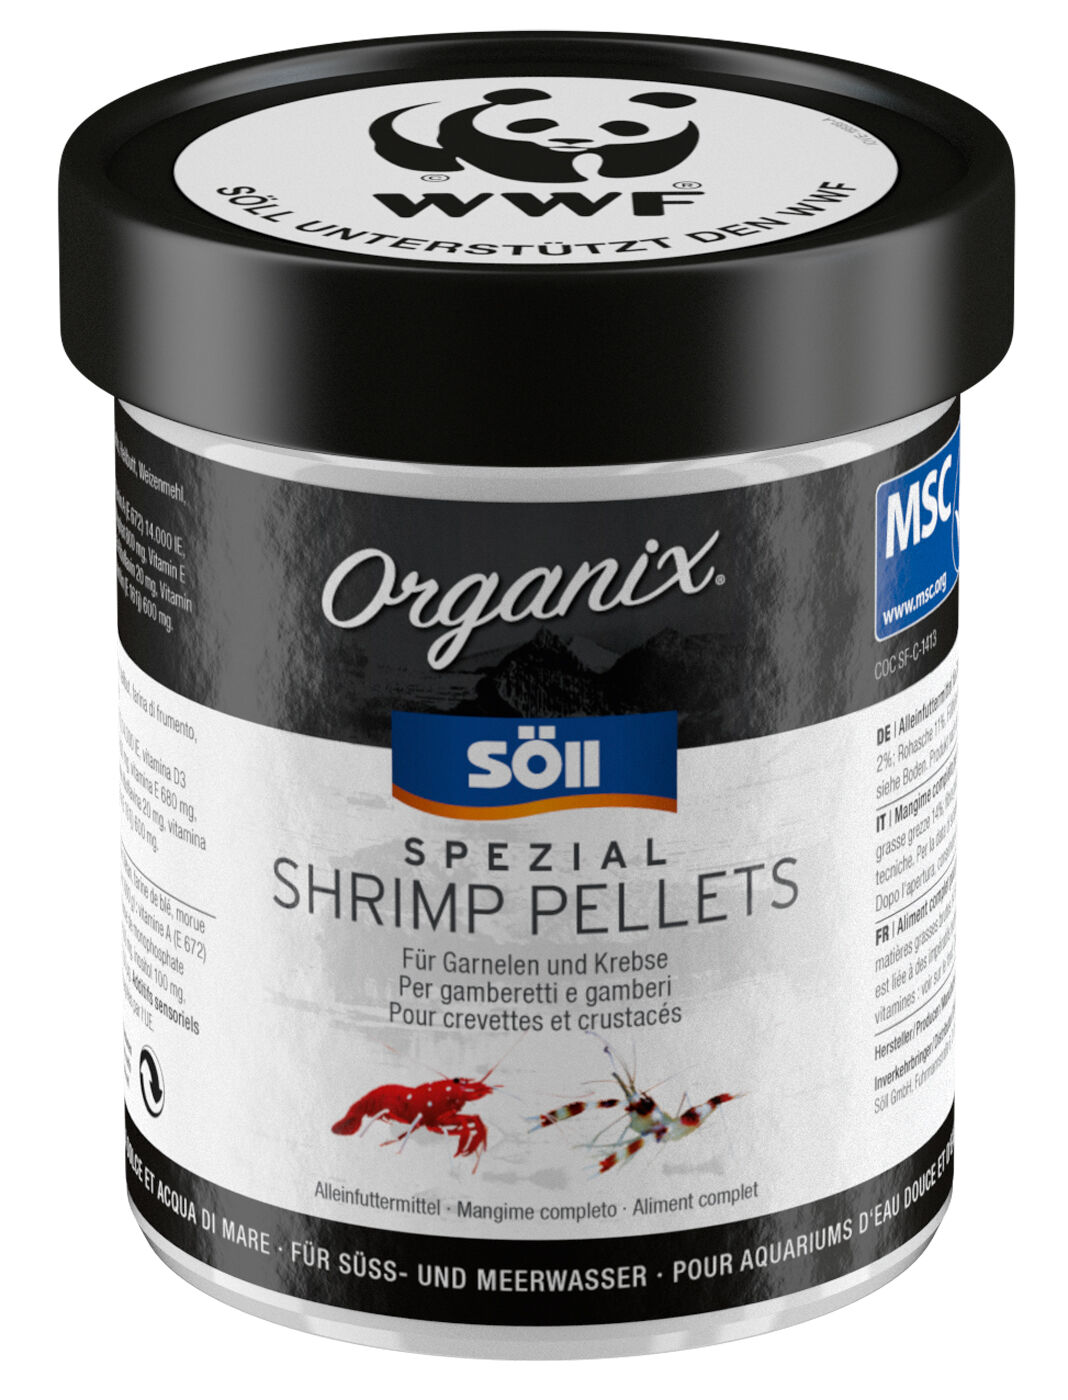 Organix Spezial Shrimp Pellets 130 ml + product picture